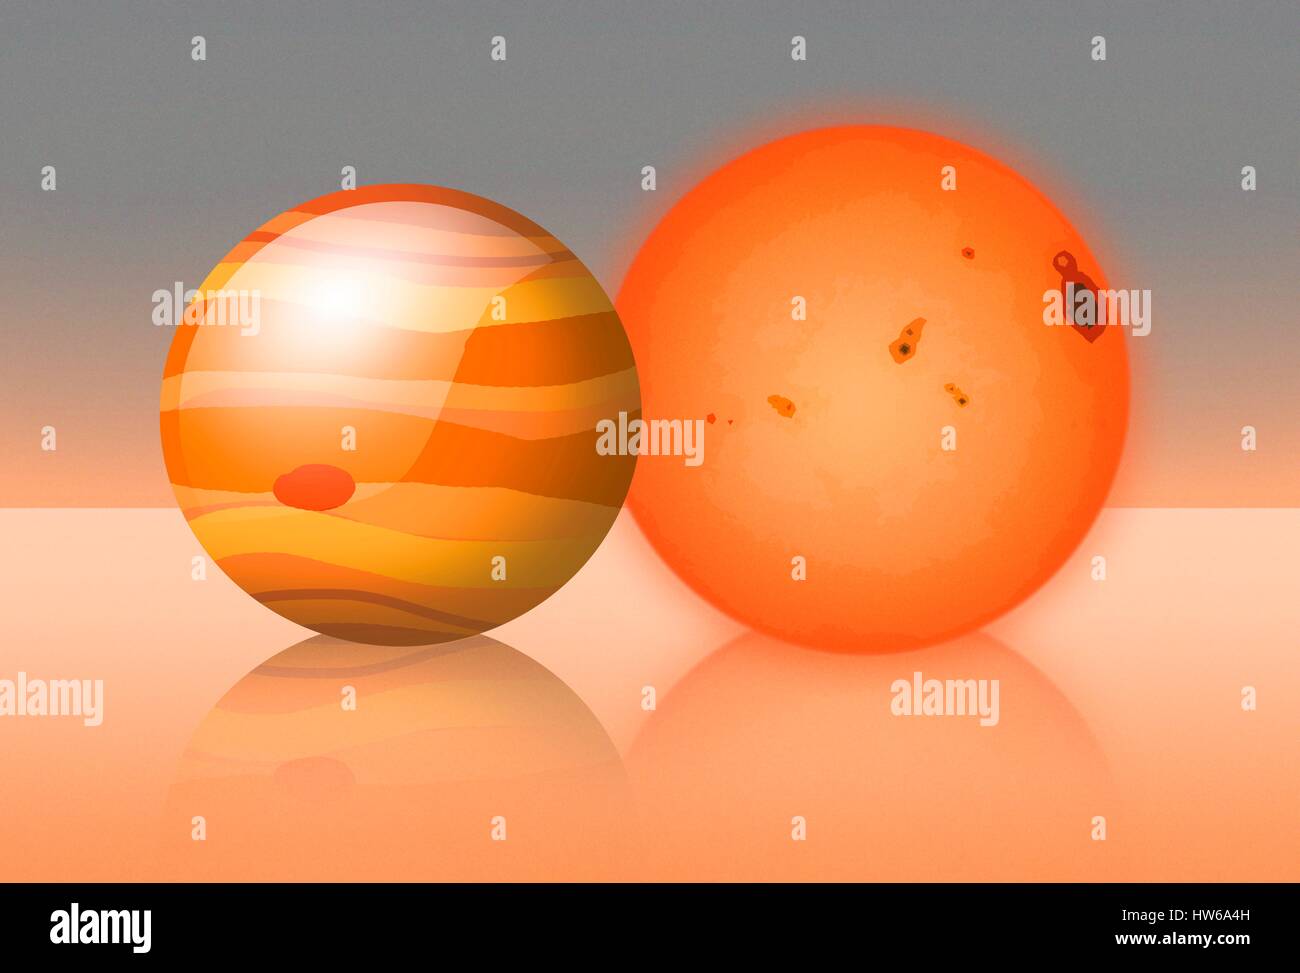 Trappiste-1 è un rosso-stella nana ΓÇô la varietà più comune ΓÇô trova una quarantina di anni luce di distanza in acquario. Nel 2015, gli astronomi hanno scoperto che Trappist-1 è stata ospite di messa a terra a tre dimensioni di pianeti. Poi è venuto sotto la luce dei riflettori di nuovo nel 2017 quando gli scienziati della NASA ha trovato un ulteriore quattro pianeti, tenendo il totale fino a sette. Trappiste-1 è solo leggermente più grande di Giove in diametro; Questa immagine mostra loro sulla stessa scala. Questo è il più pianeti terrestri che abbia mai trovato in orbita un singolo asterisco, compreso il nostro sistema solare. Foto Stock